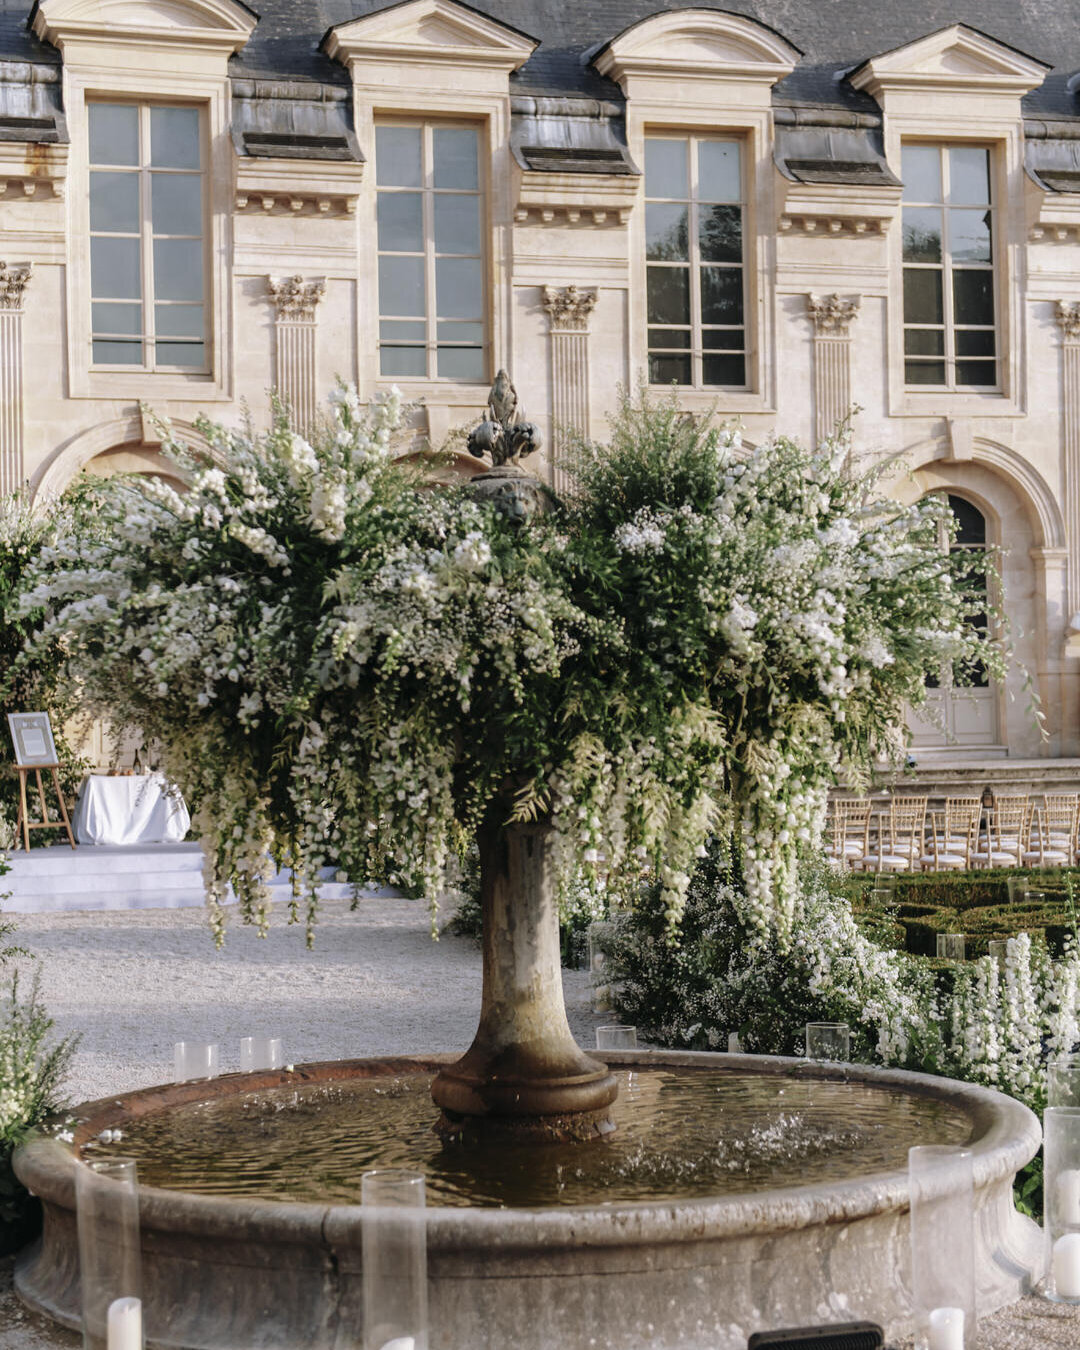 Paris Destination Wedding at Chateau de Chantilly by Alejandra Poupel Events Flower on the table 